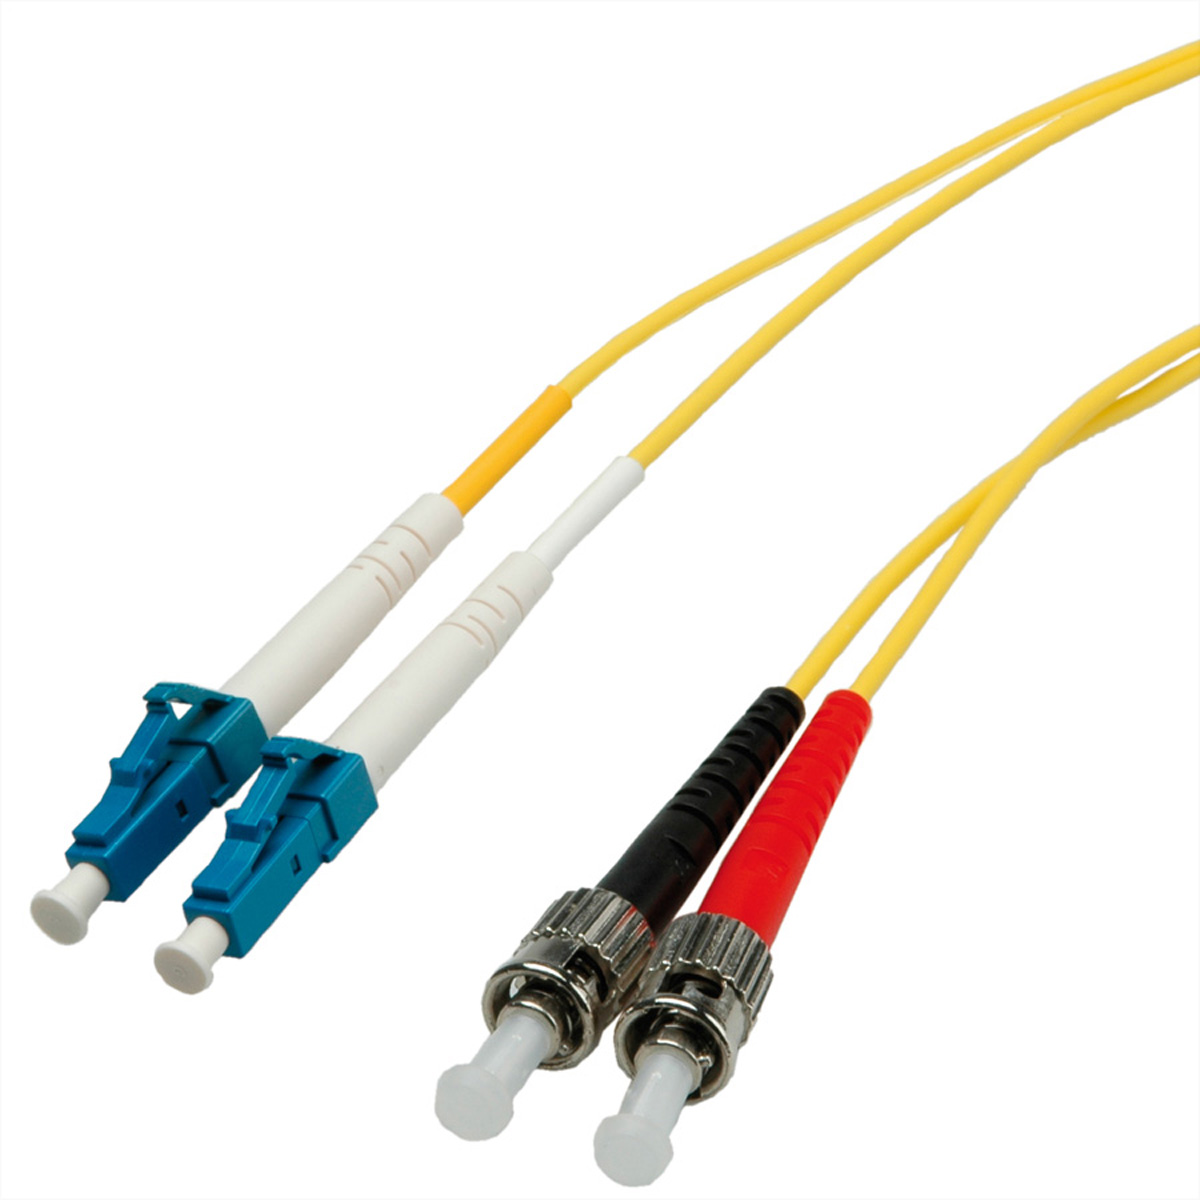 Quality LWL-Kabel Single Mode E9/125Âµm OS2, LC/ST, gelb, 2 m